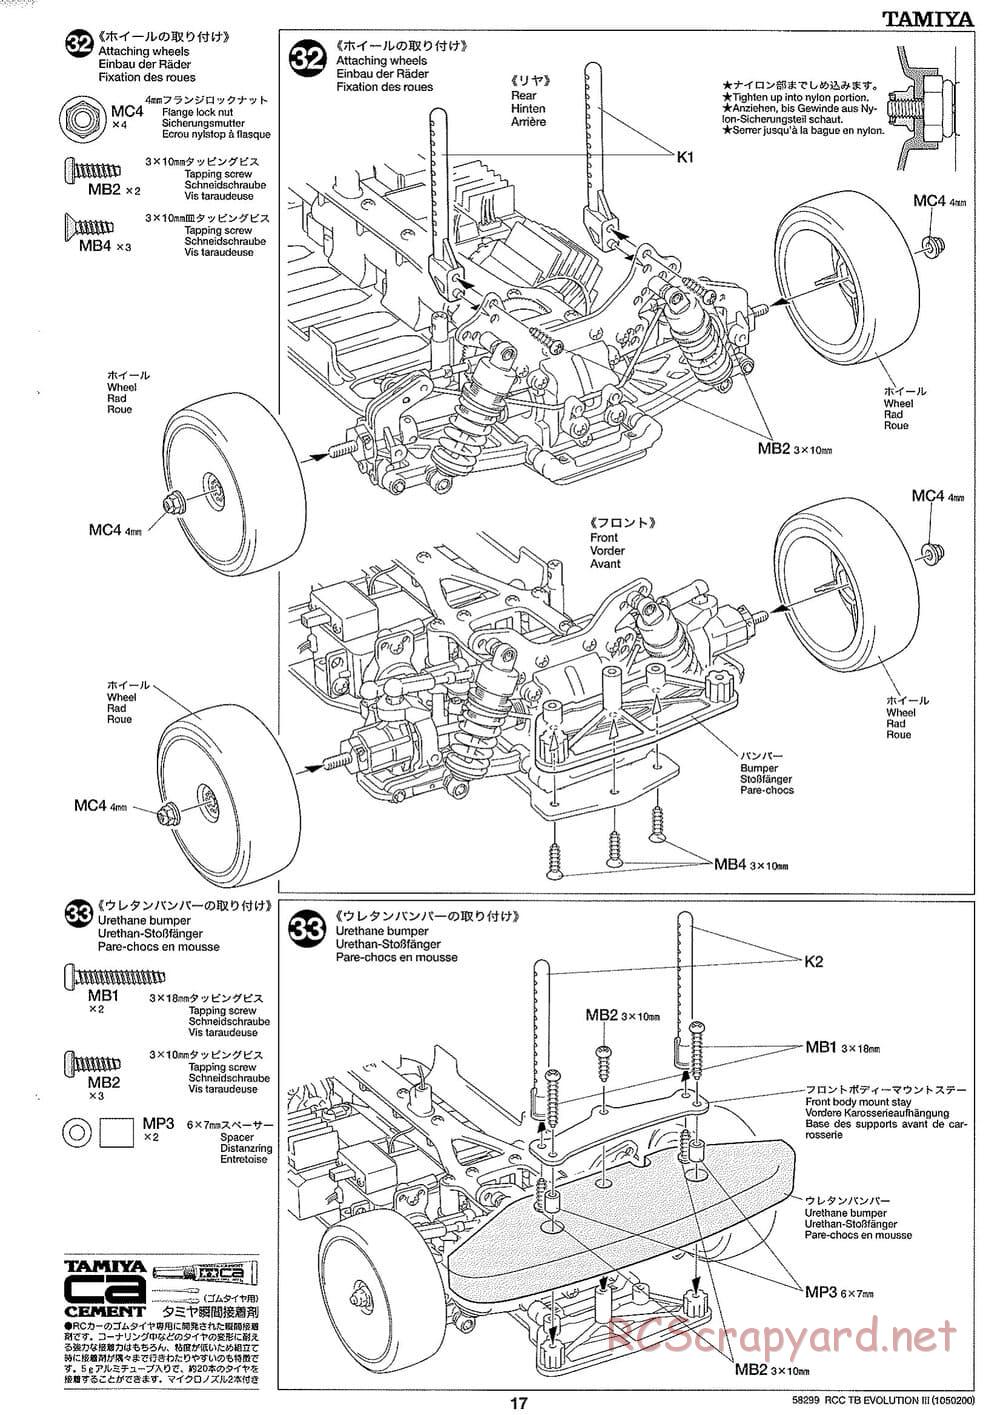 Tamiya - TB Evolution III Chassis - Manual - Page 18